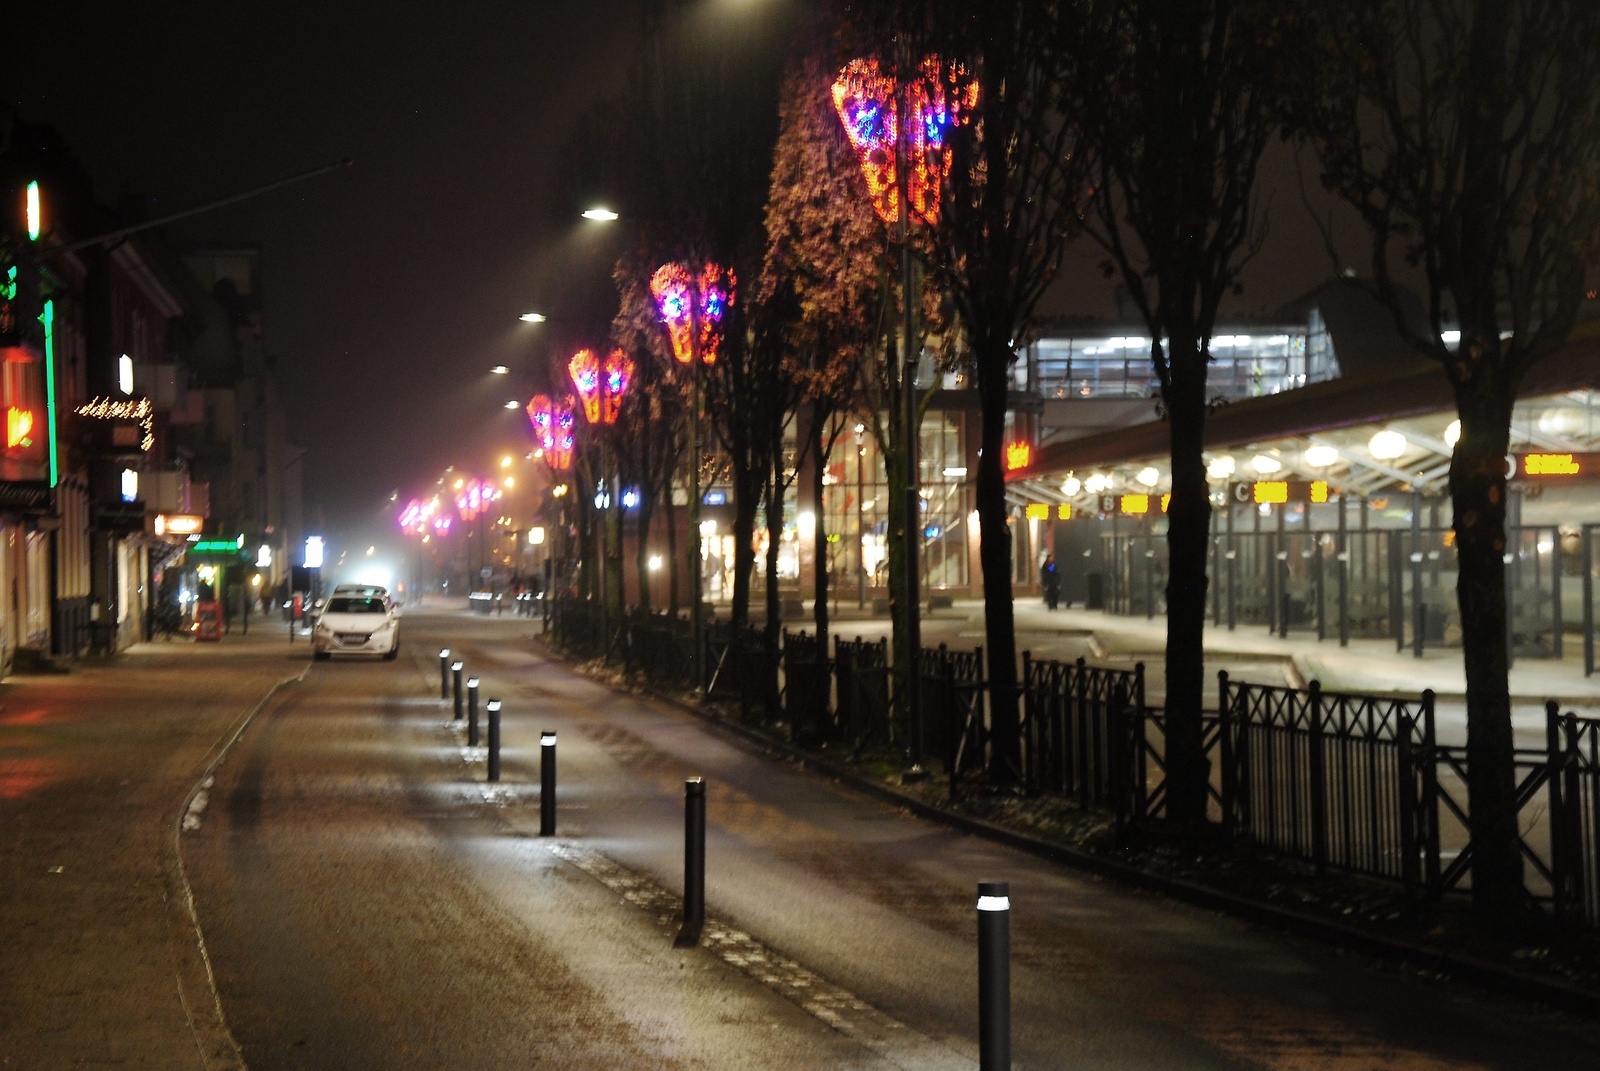 Julbelysning på Järnvähsgatan